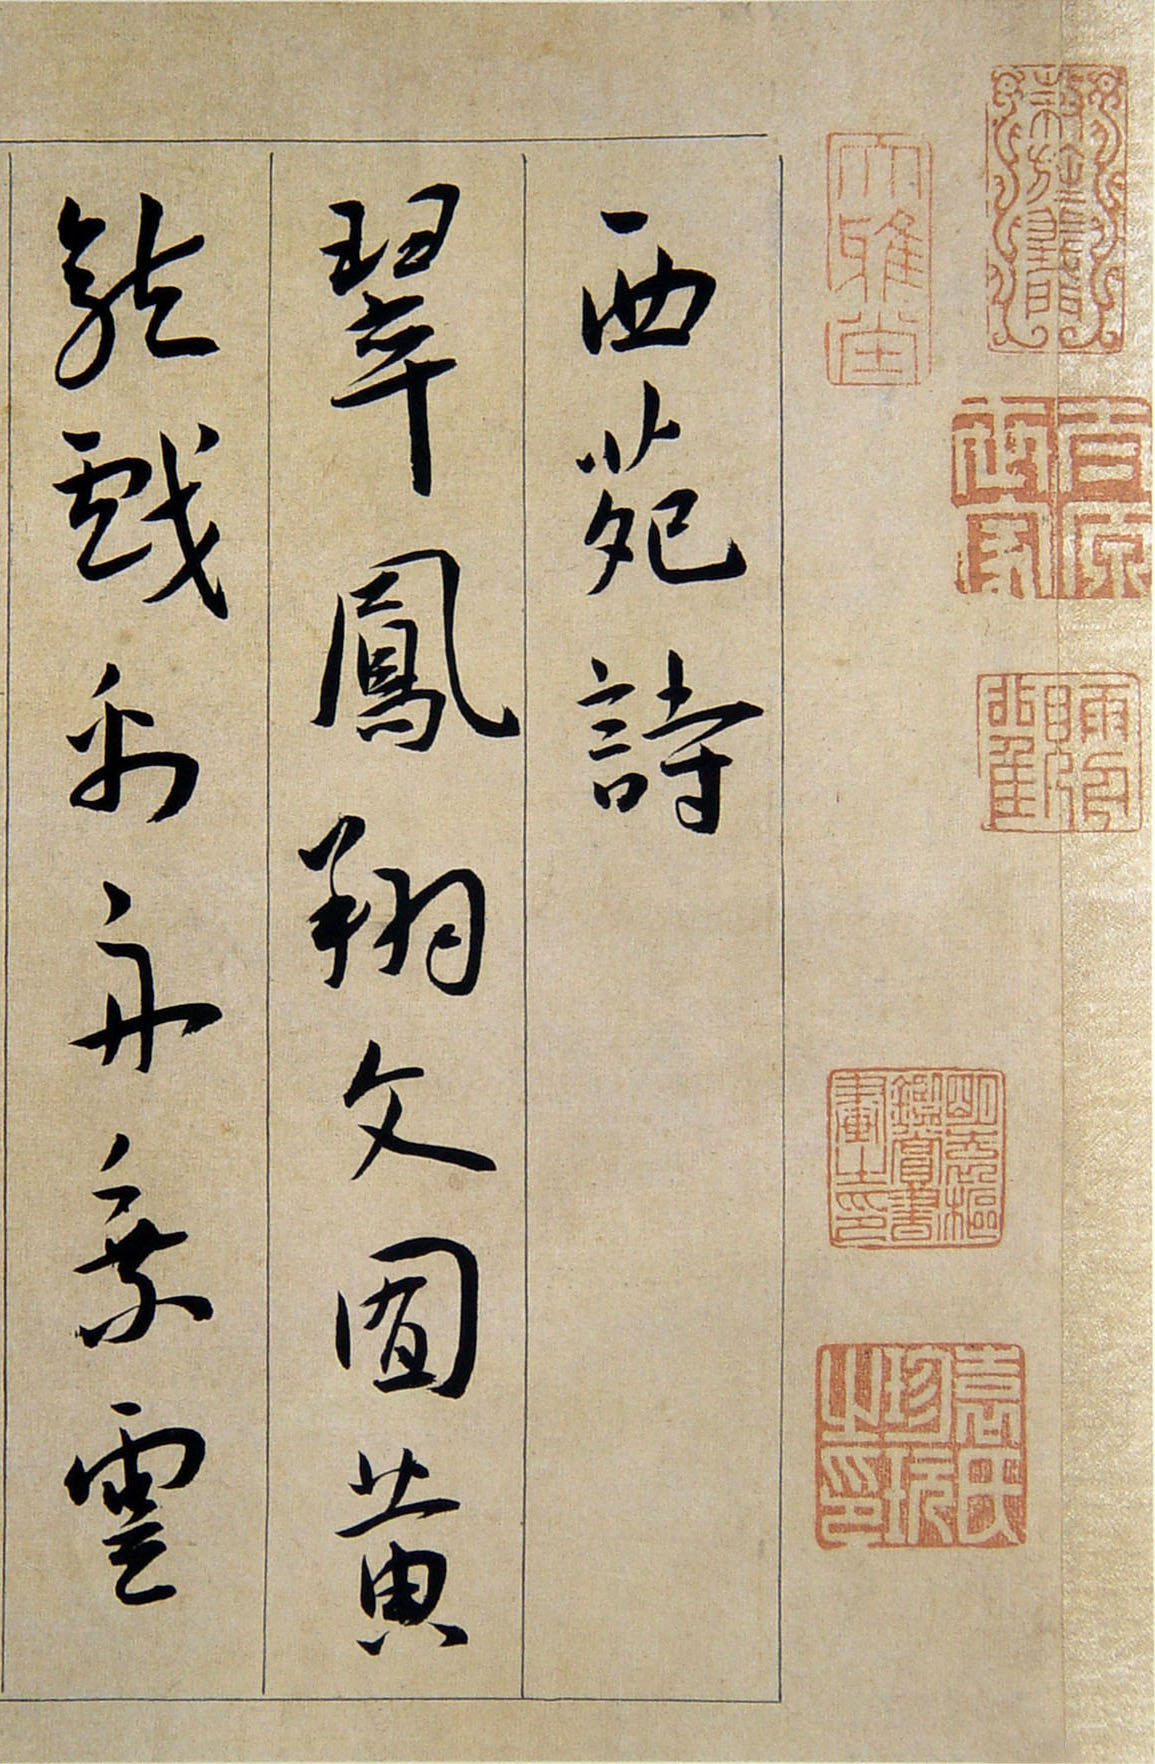 王宠《行书西苑诗》卷-天津博物馆藏(图1)